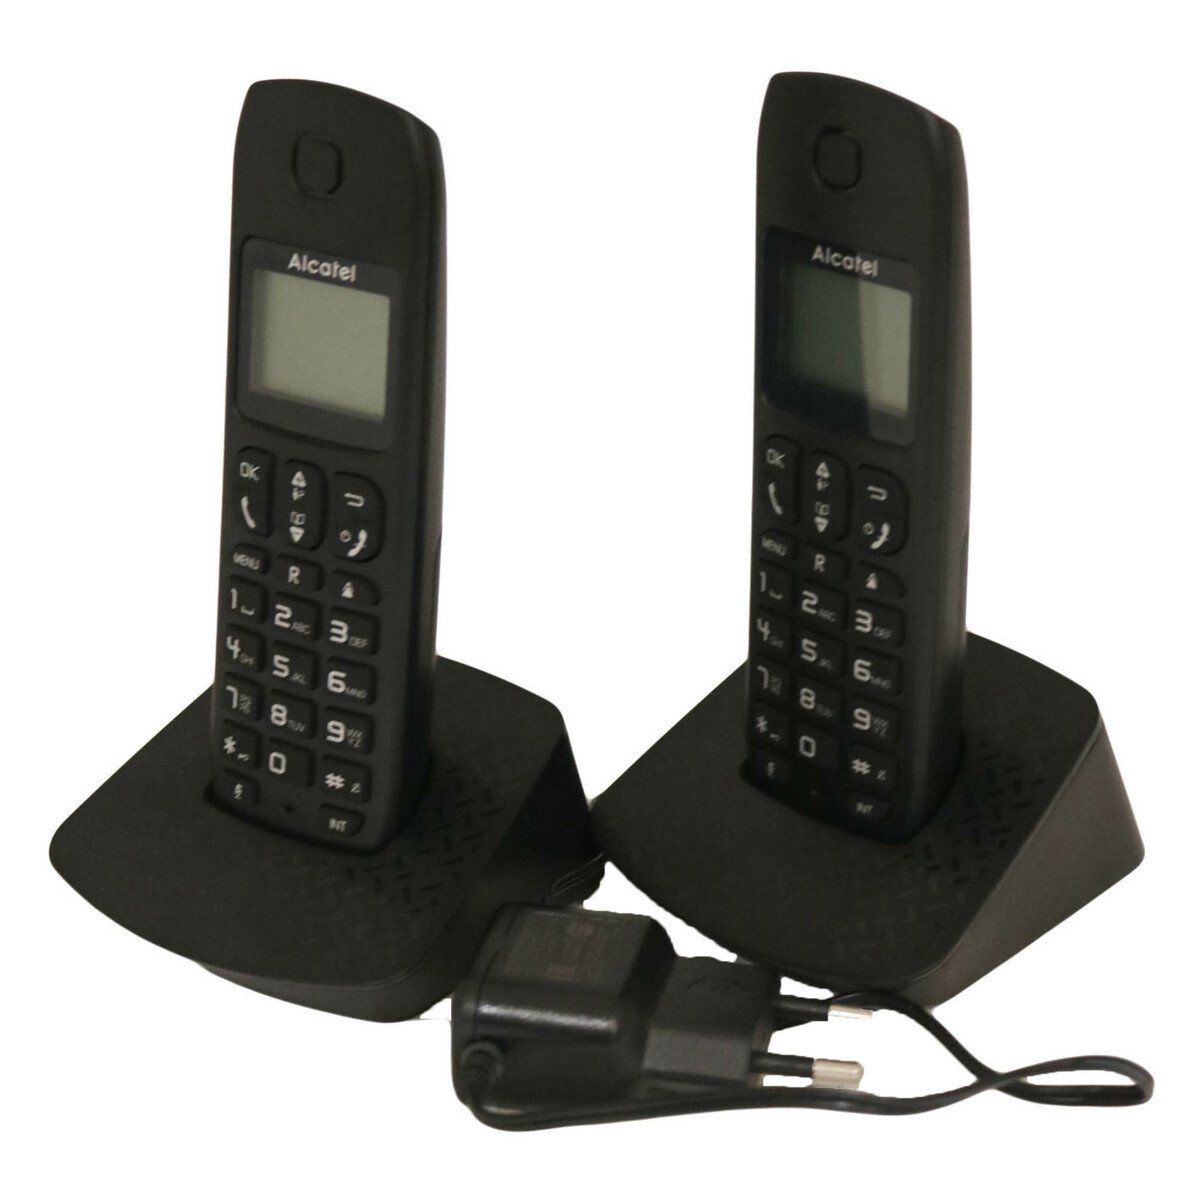 Alcatel Cordless Phone E132 Duo